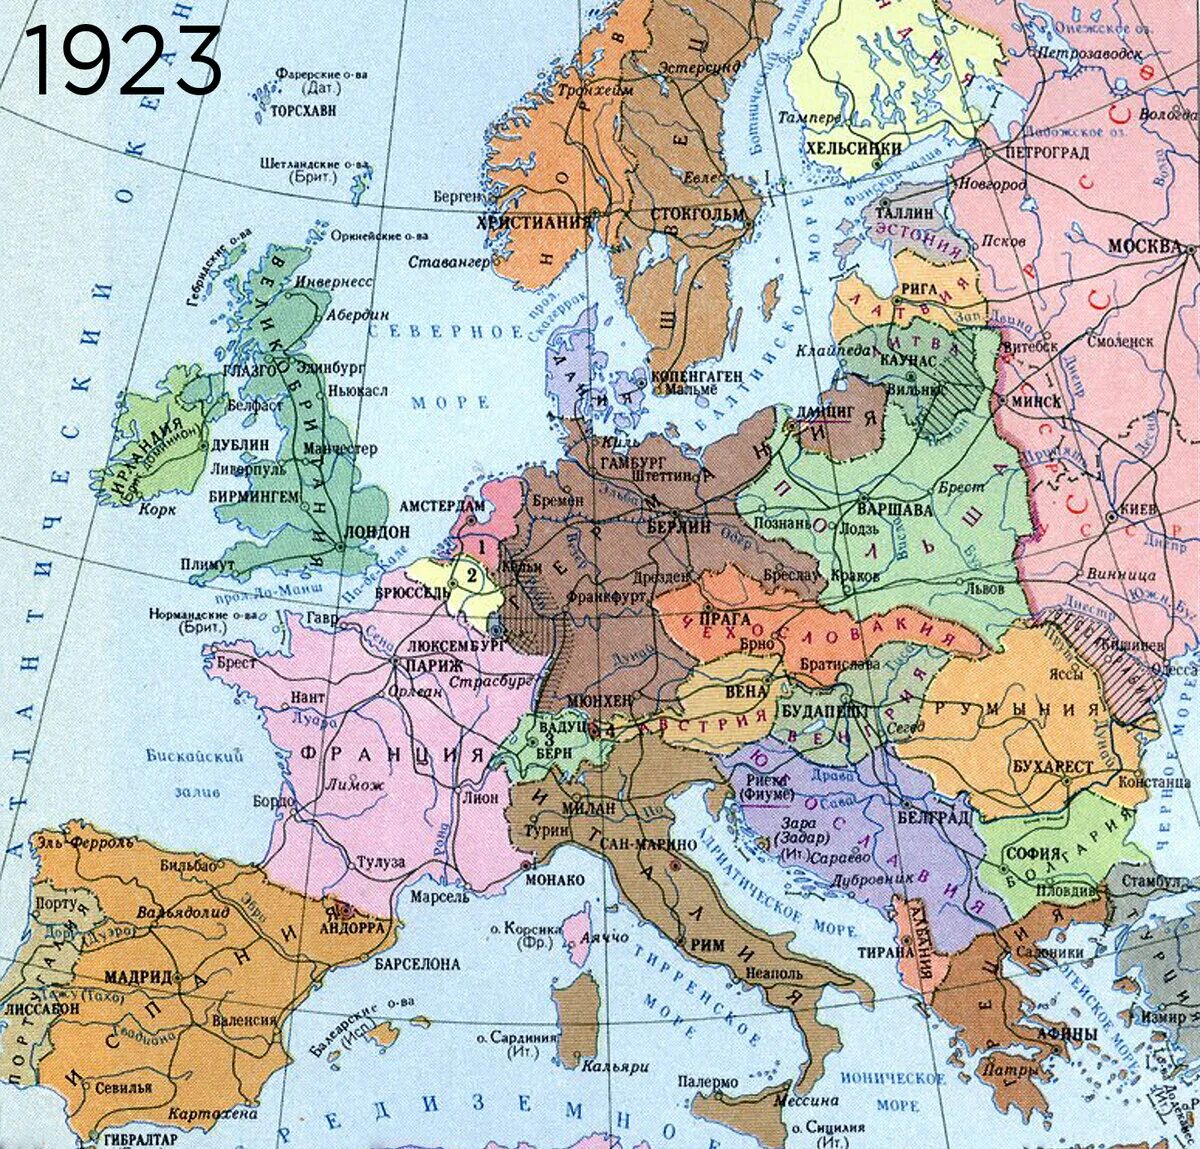 Europa 1 2. Карта Европы 1 мировой войны. Карта Европы после 1 мировой войны политическая. Карта Европы после 2 мировой войны.